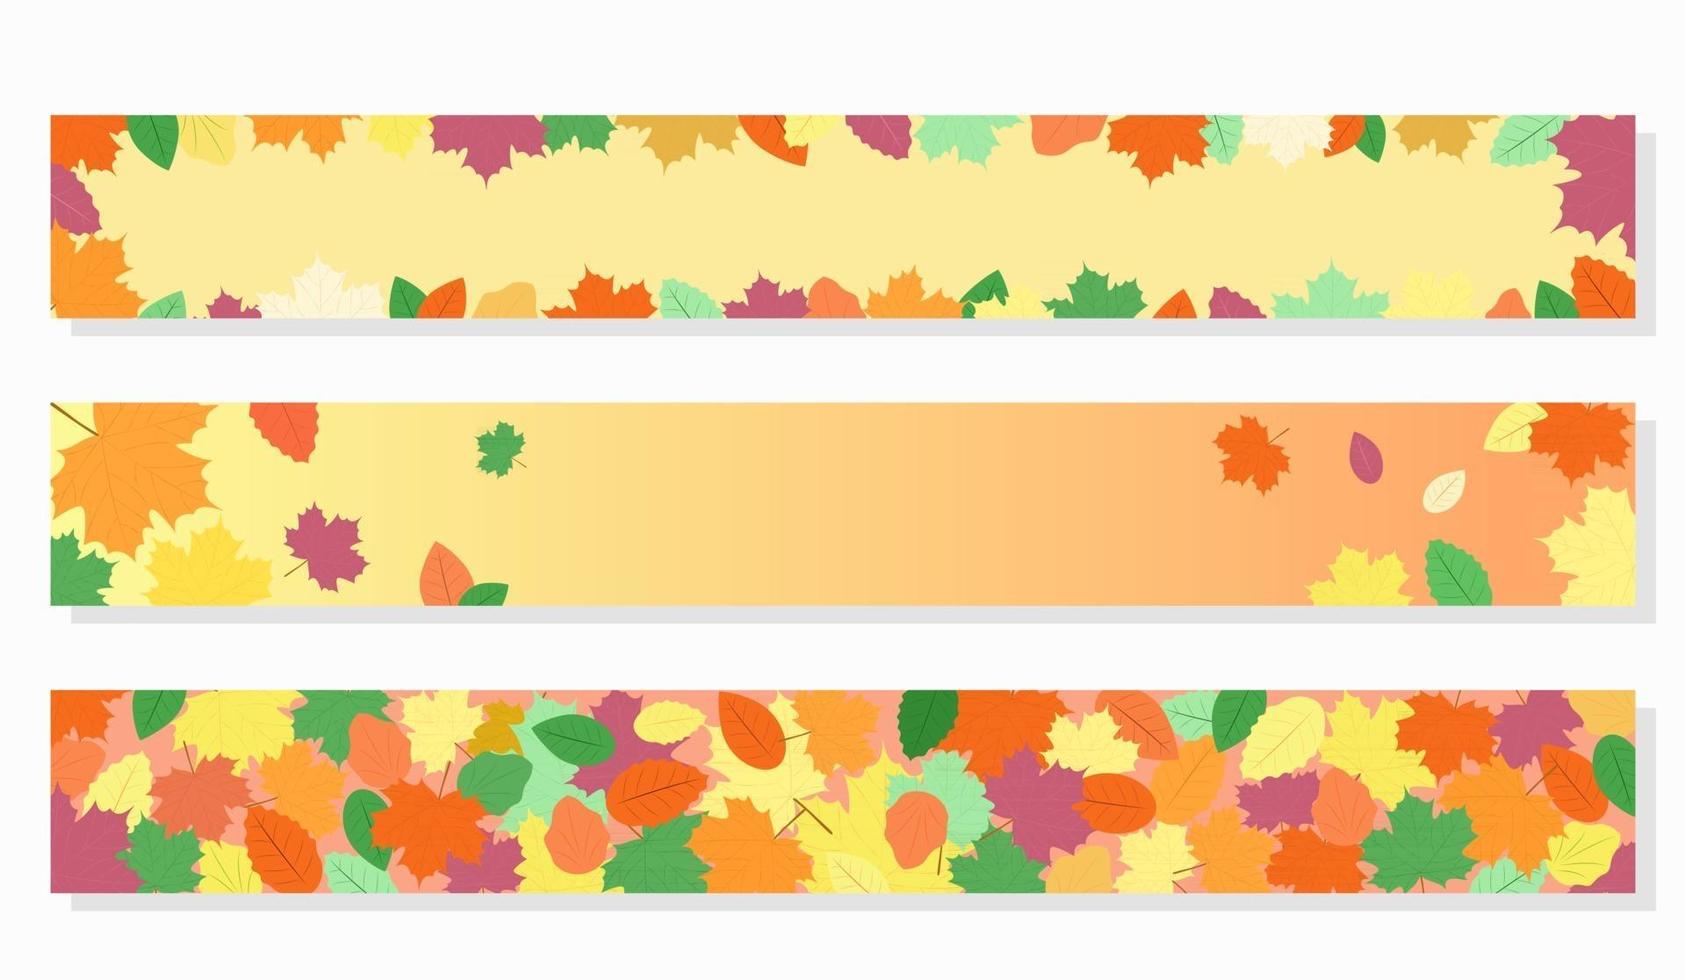 höstens webbbanners. vektor uppsättning mallar. höstlöv på gul och orange bakgrund. banners är lämpliga för höstförsäljning, säsongsbetonad webbdesign